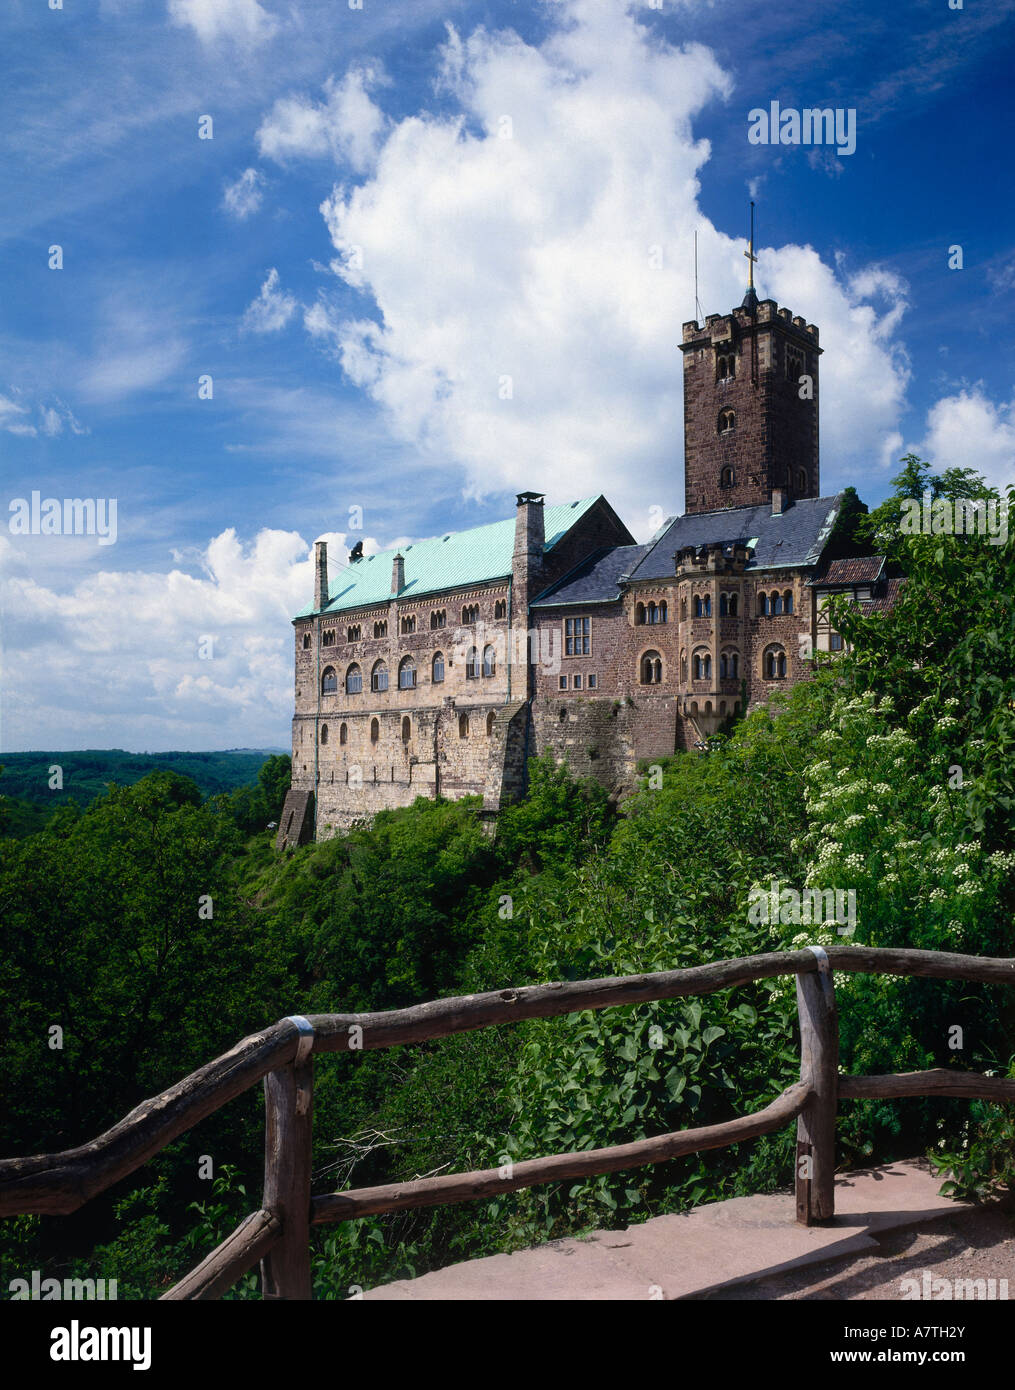 Château sur la colline parlementaire, Eisenach, Allemagne Banque D'Images